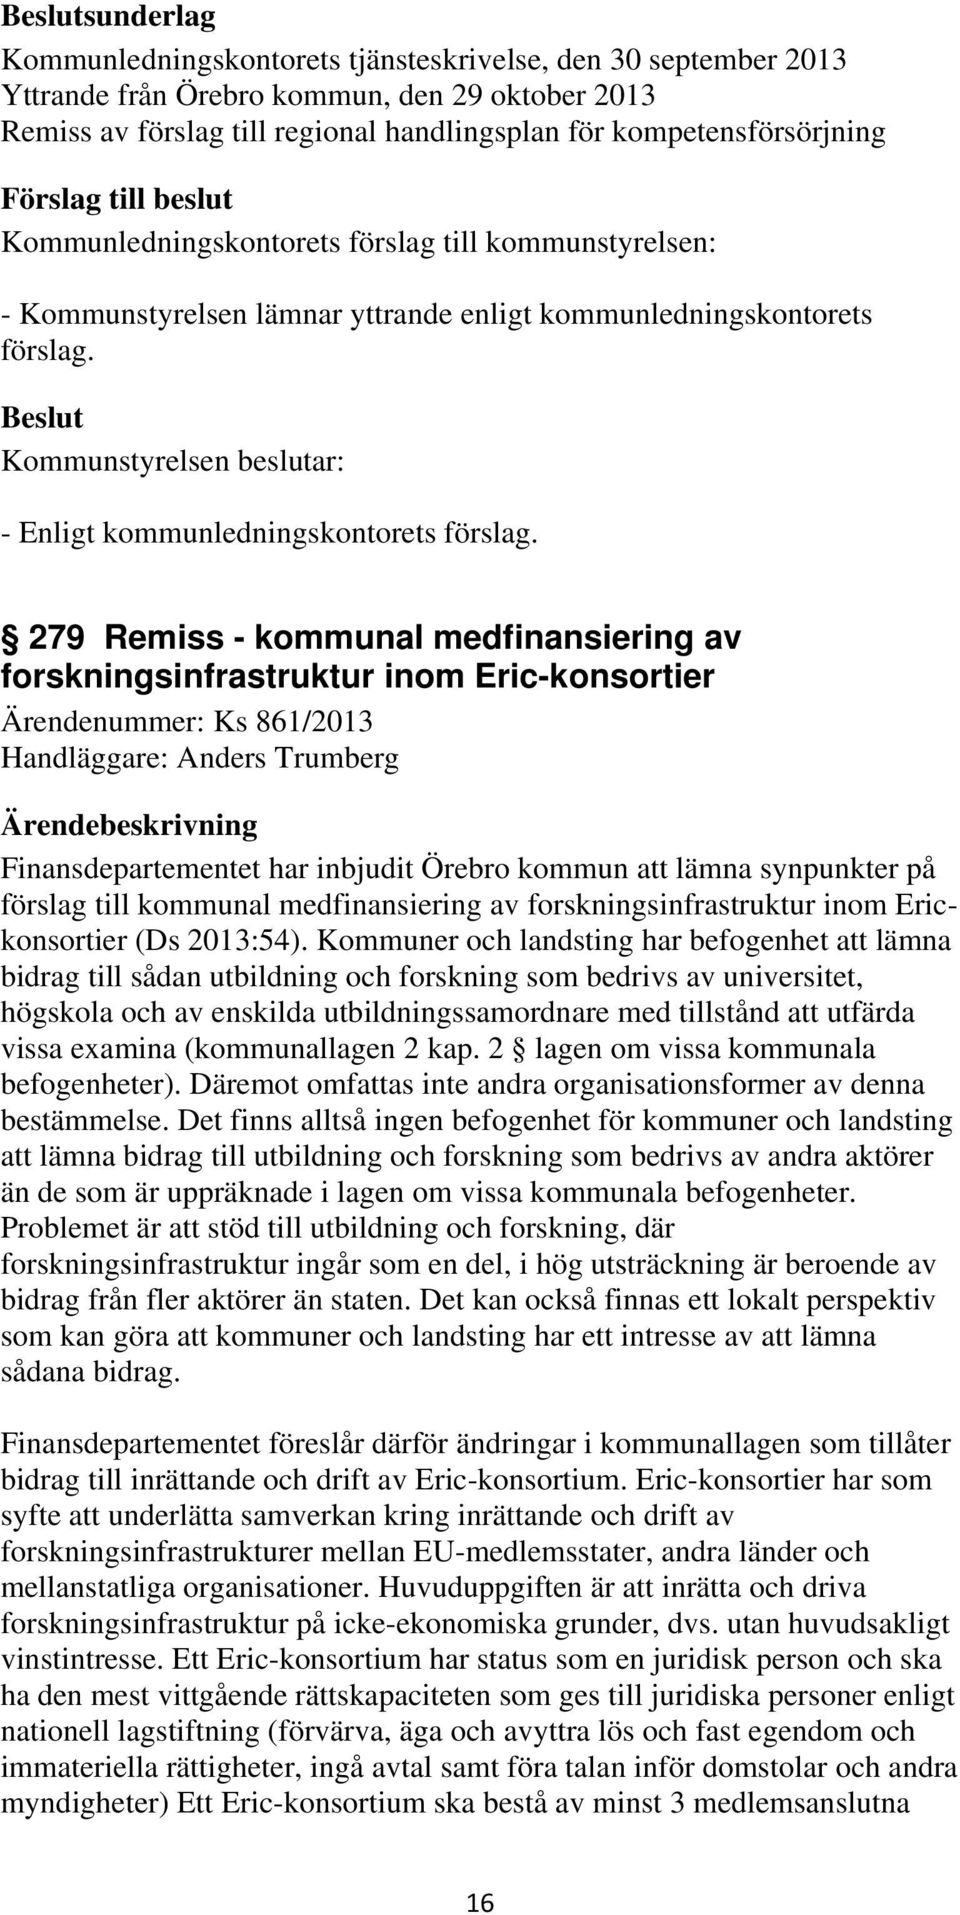 279 Remiss - kommunal medfinansiering av forskningsinfrastruktur inom Eric-konsortier Ärendenummer: Ks 861/2013 Handläggare: Anders Trumberg Finansdepartementet har inbjudit Örebro kommun att lämna